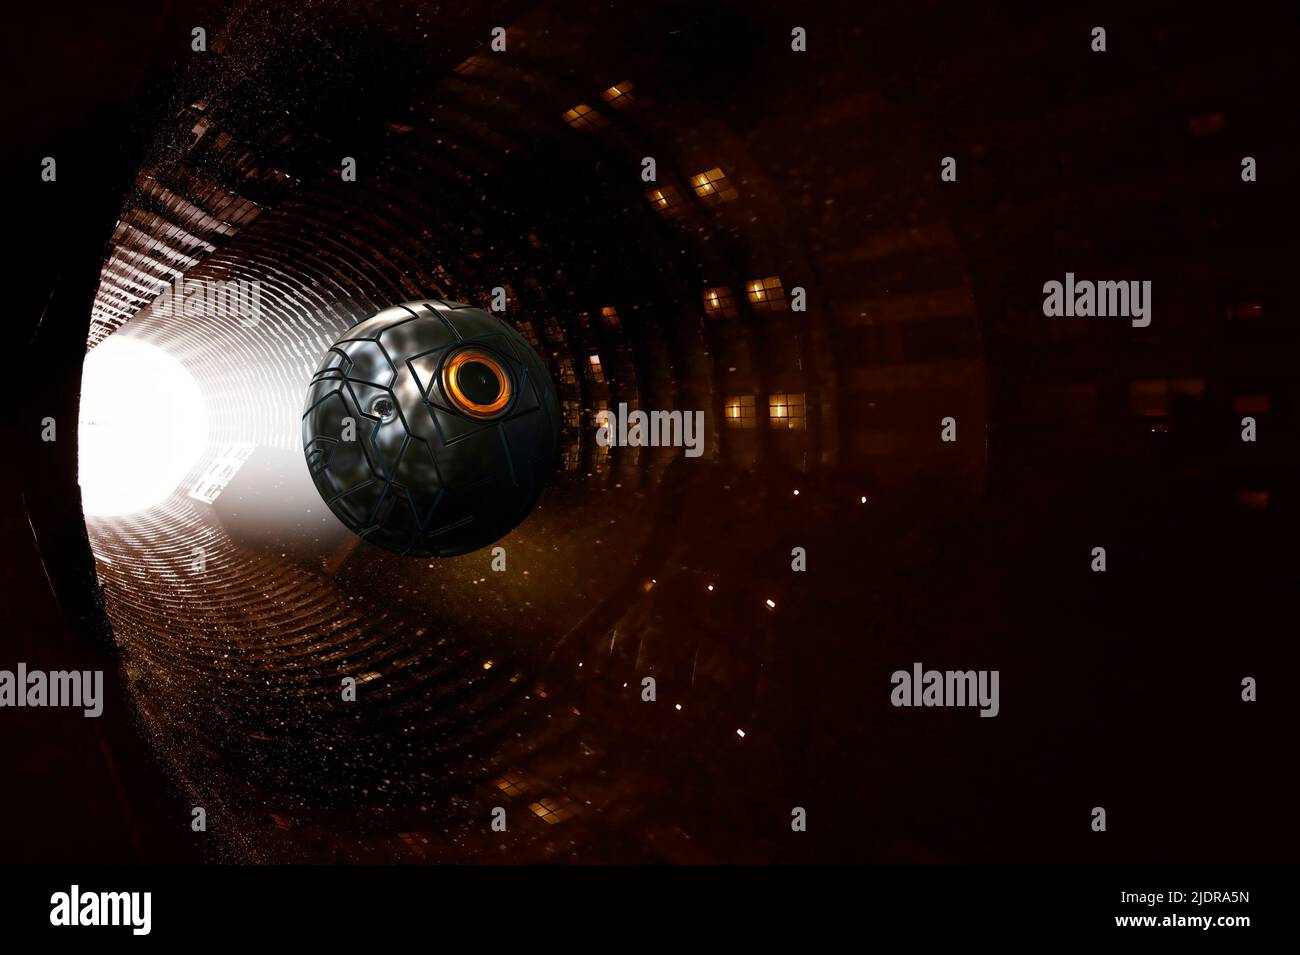 misterioso túnel alienígena y una esfera que se mueve a través de él Foto de stock